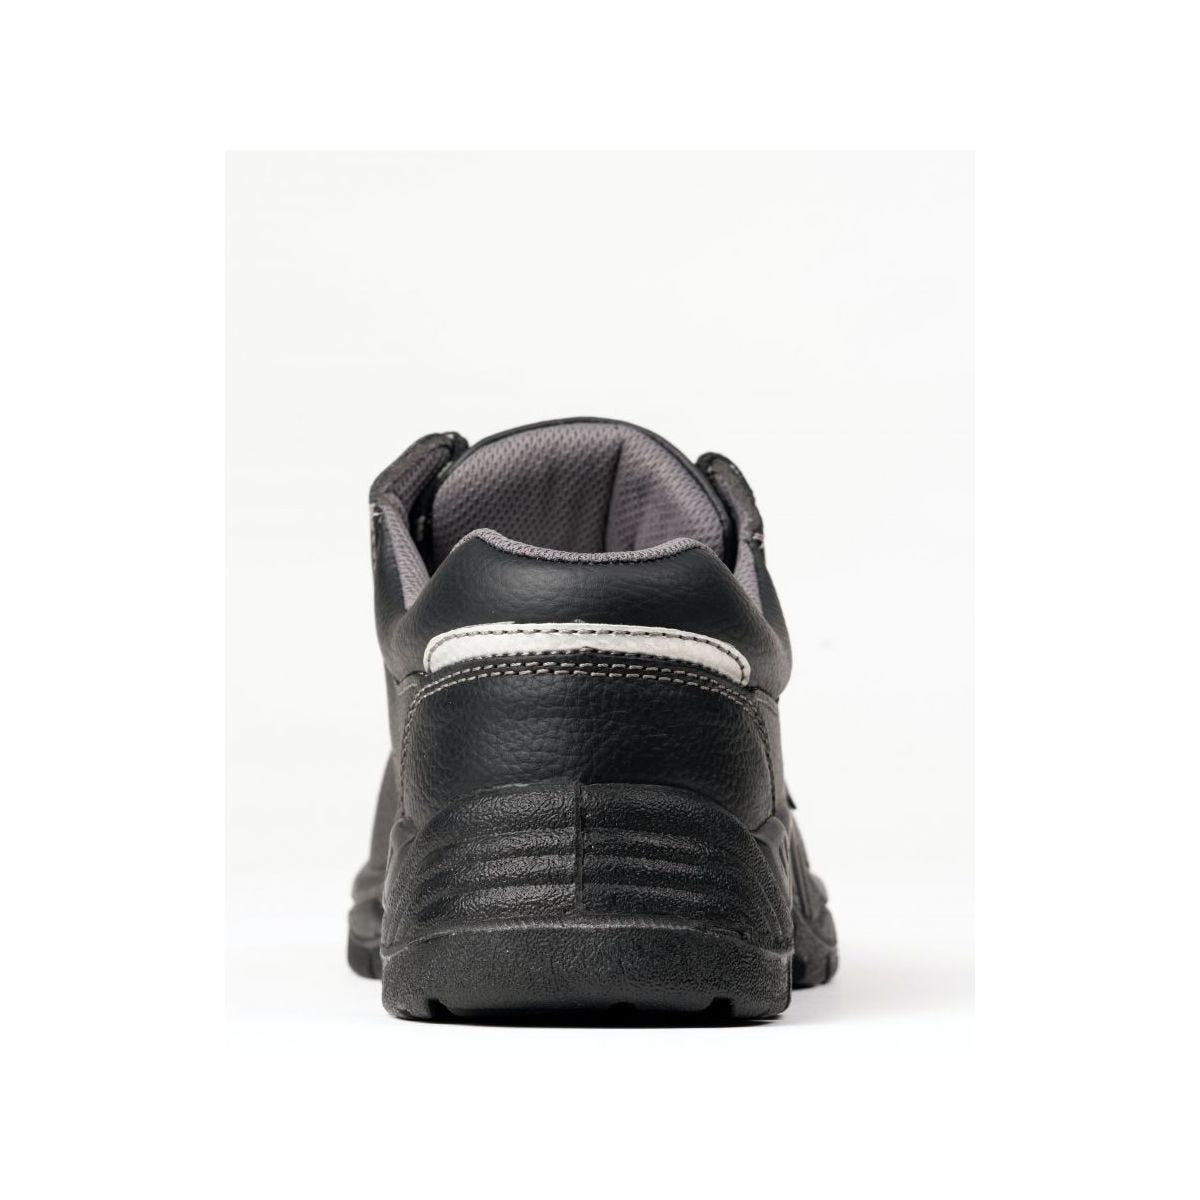 Chaussures de sécurité basses AGATE II S3 Noir - Coverguard - Taille 34 2